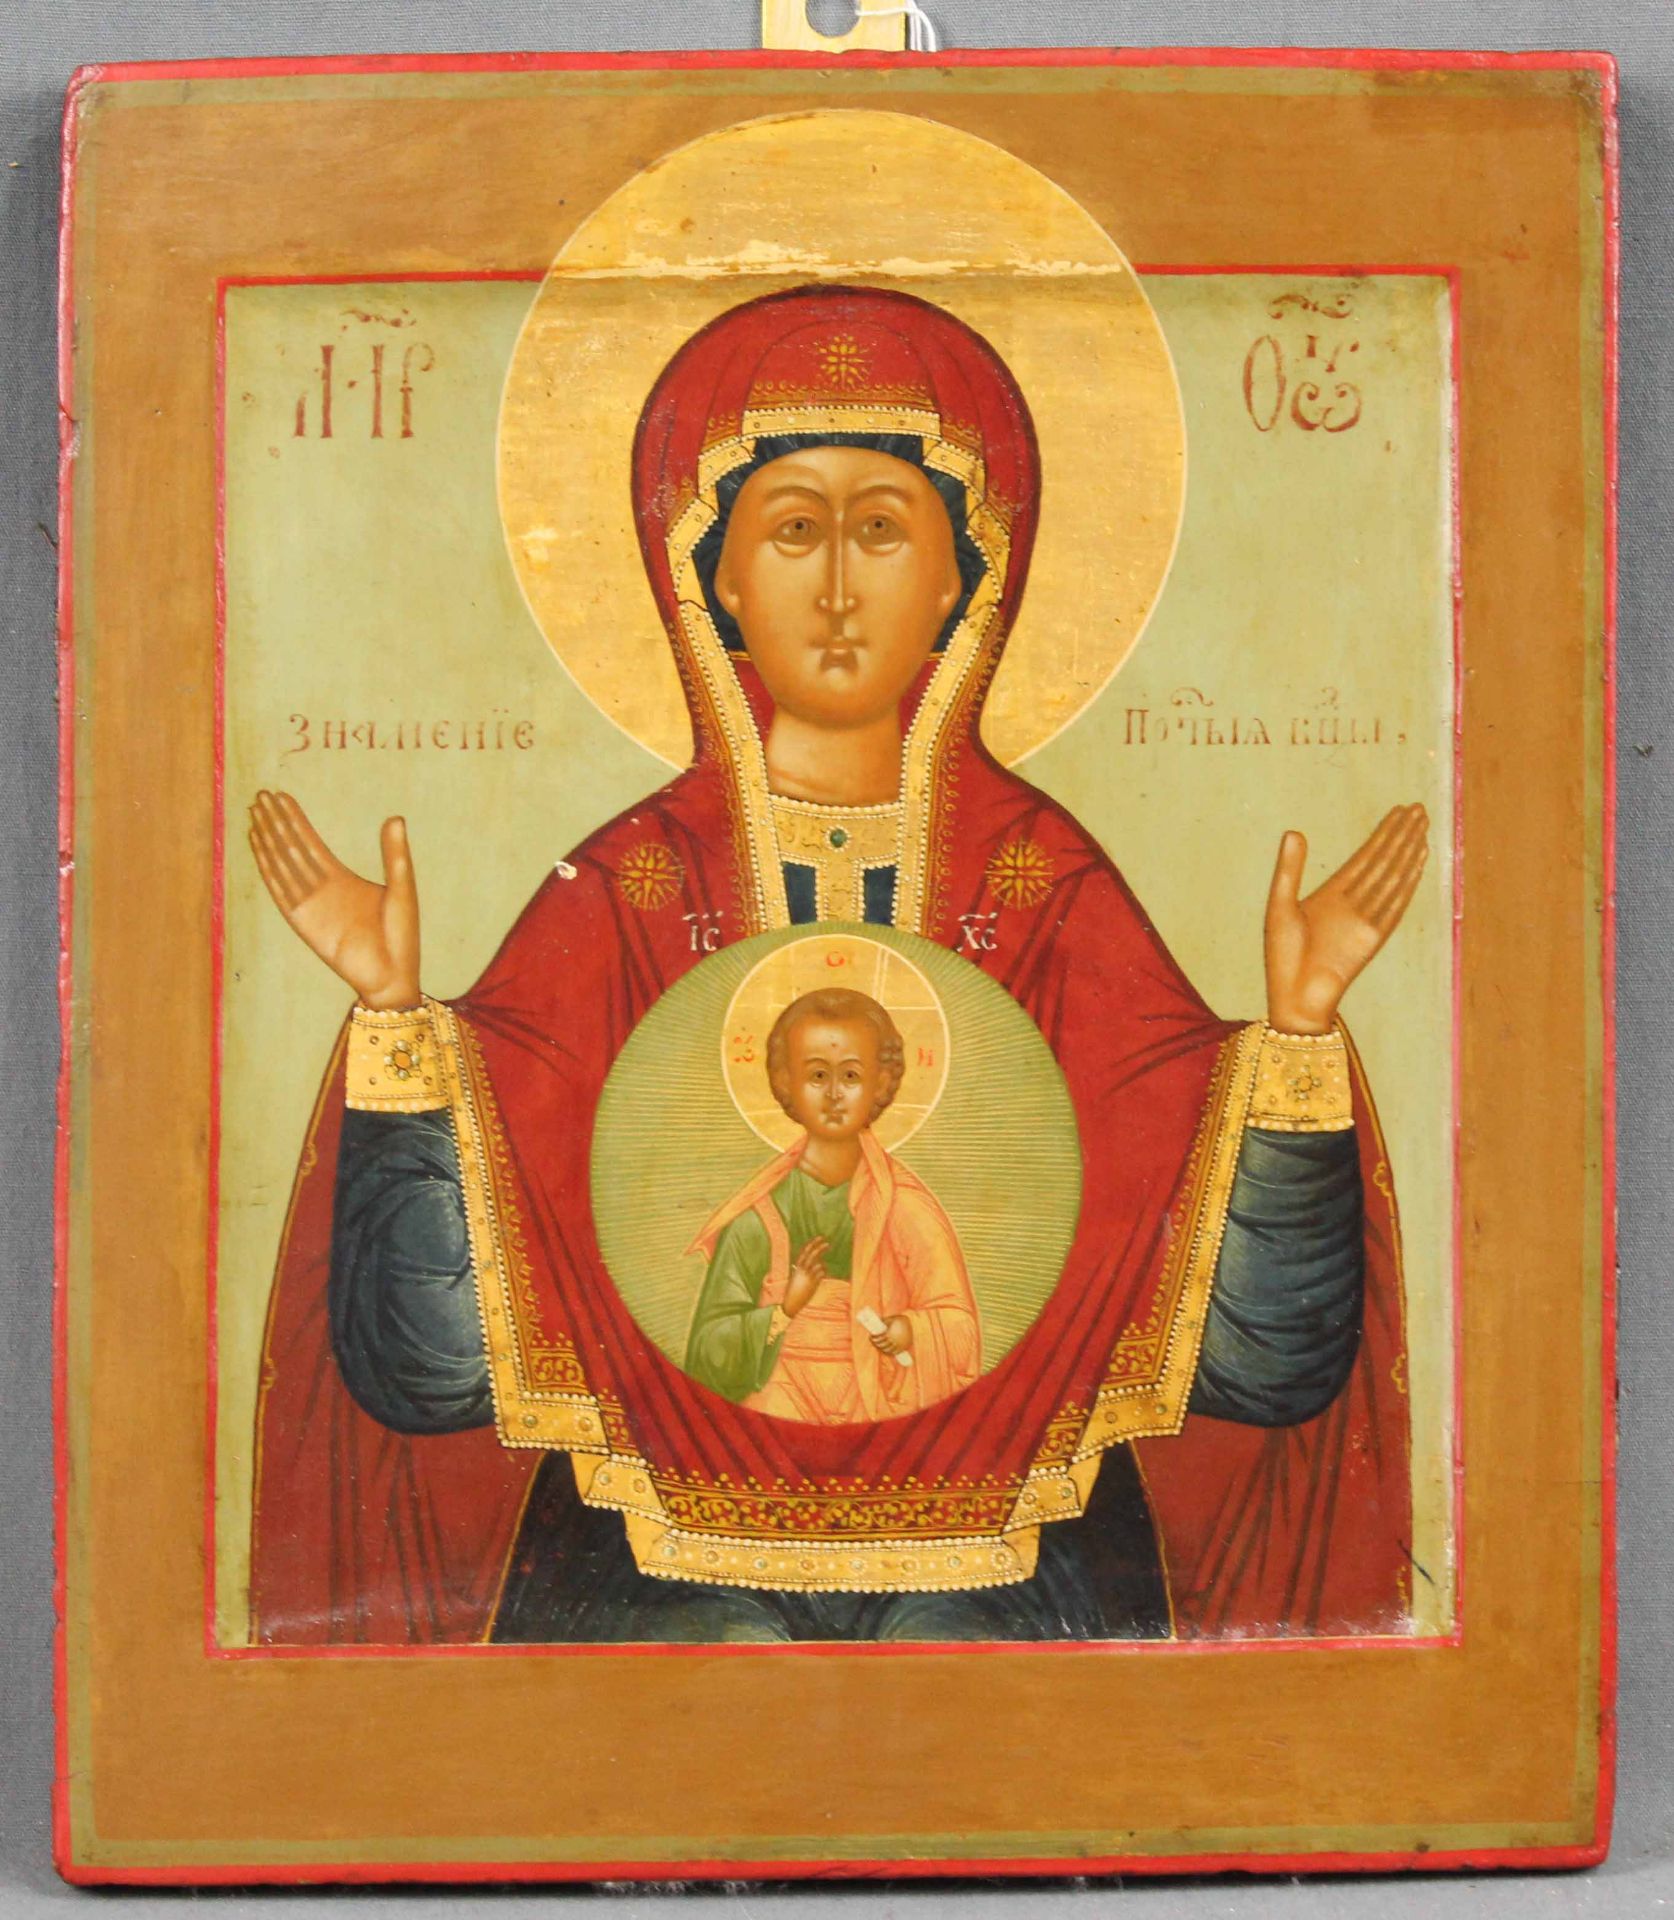 Ikone alt. Slawisch. Maria und Jesus. Wohl um 1880.32 cm x 27 cm. Gemälde.Icon old. Slavic. Mary and